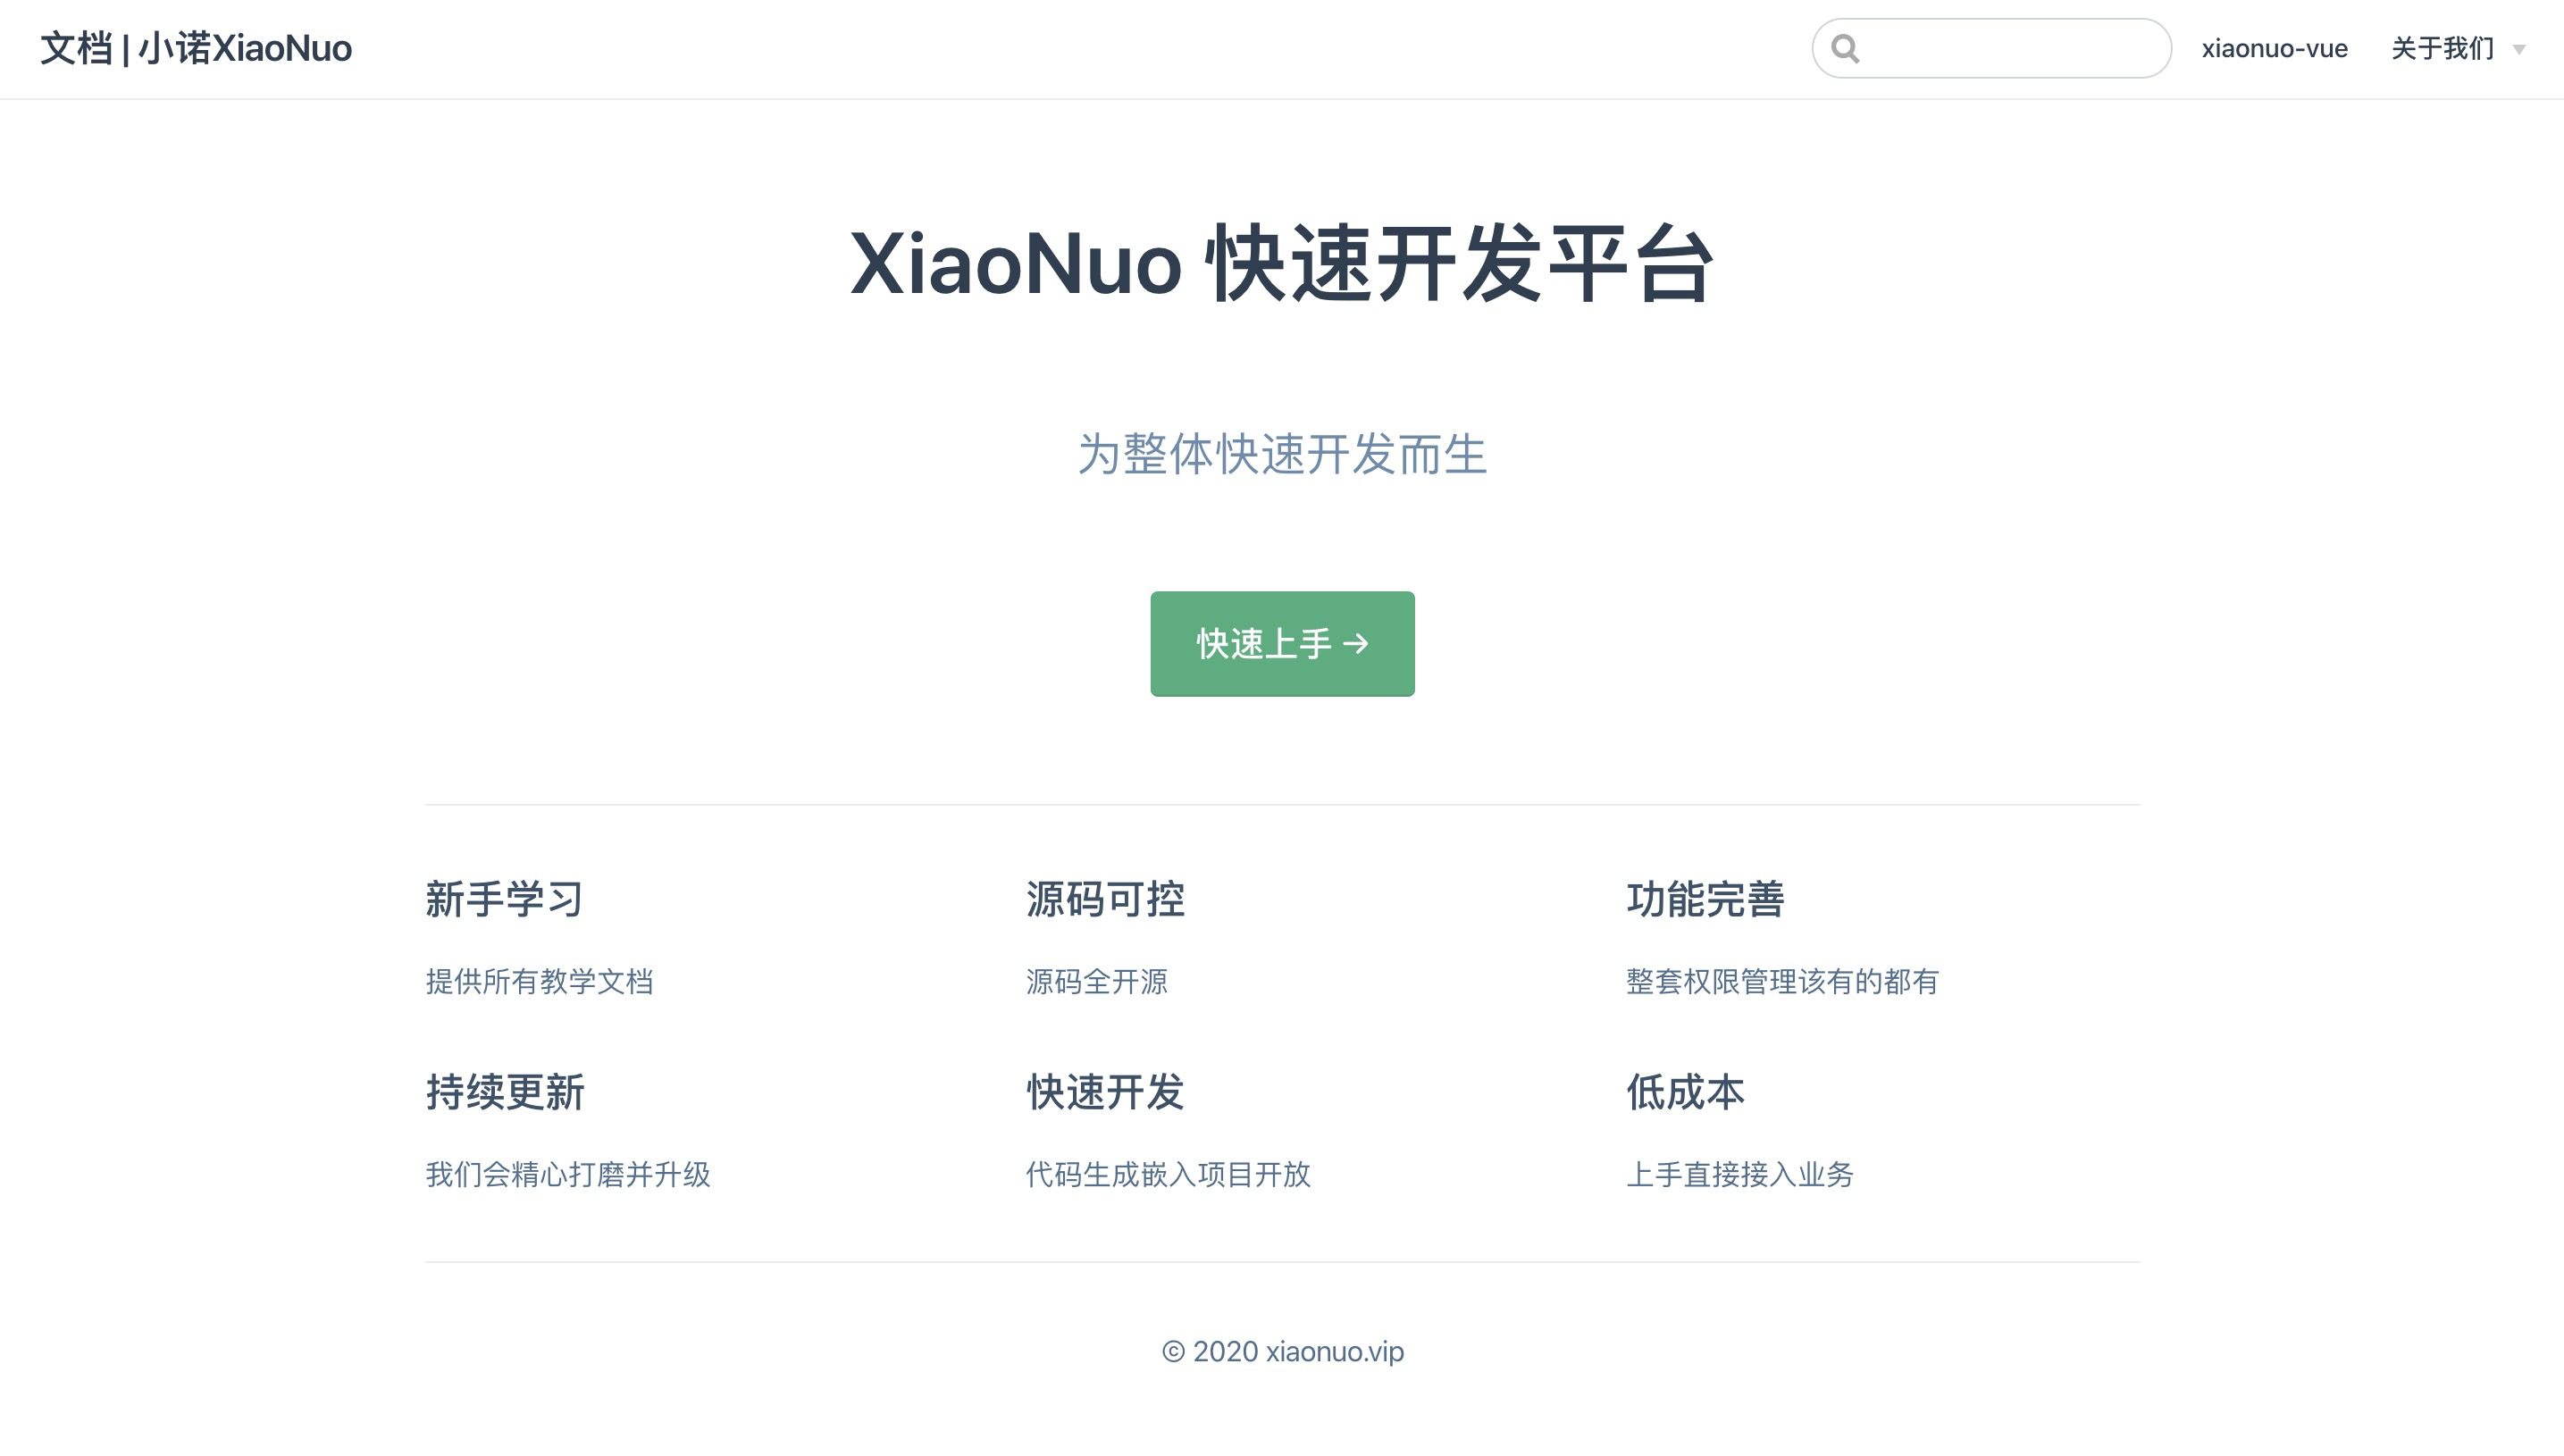 XiaoNuo 快速开发平台文档已发布